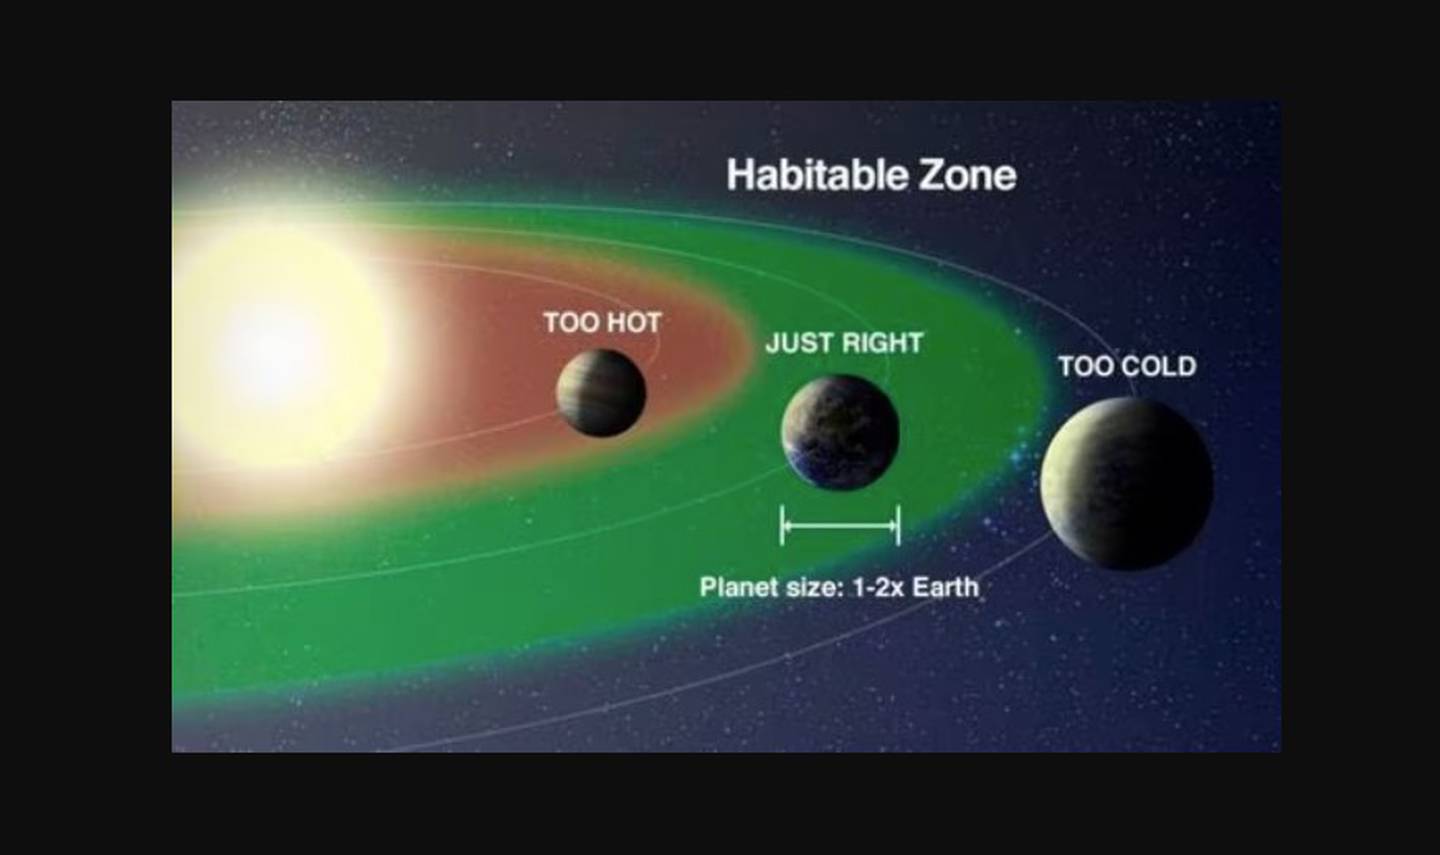 Zone habitable